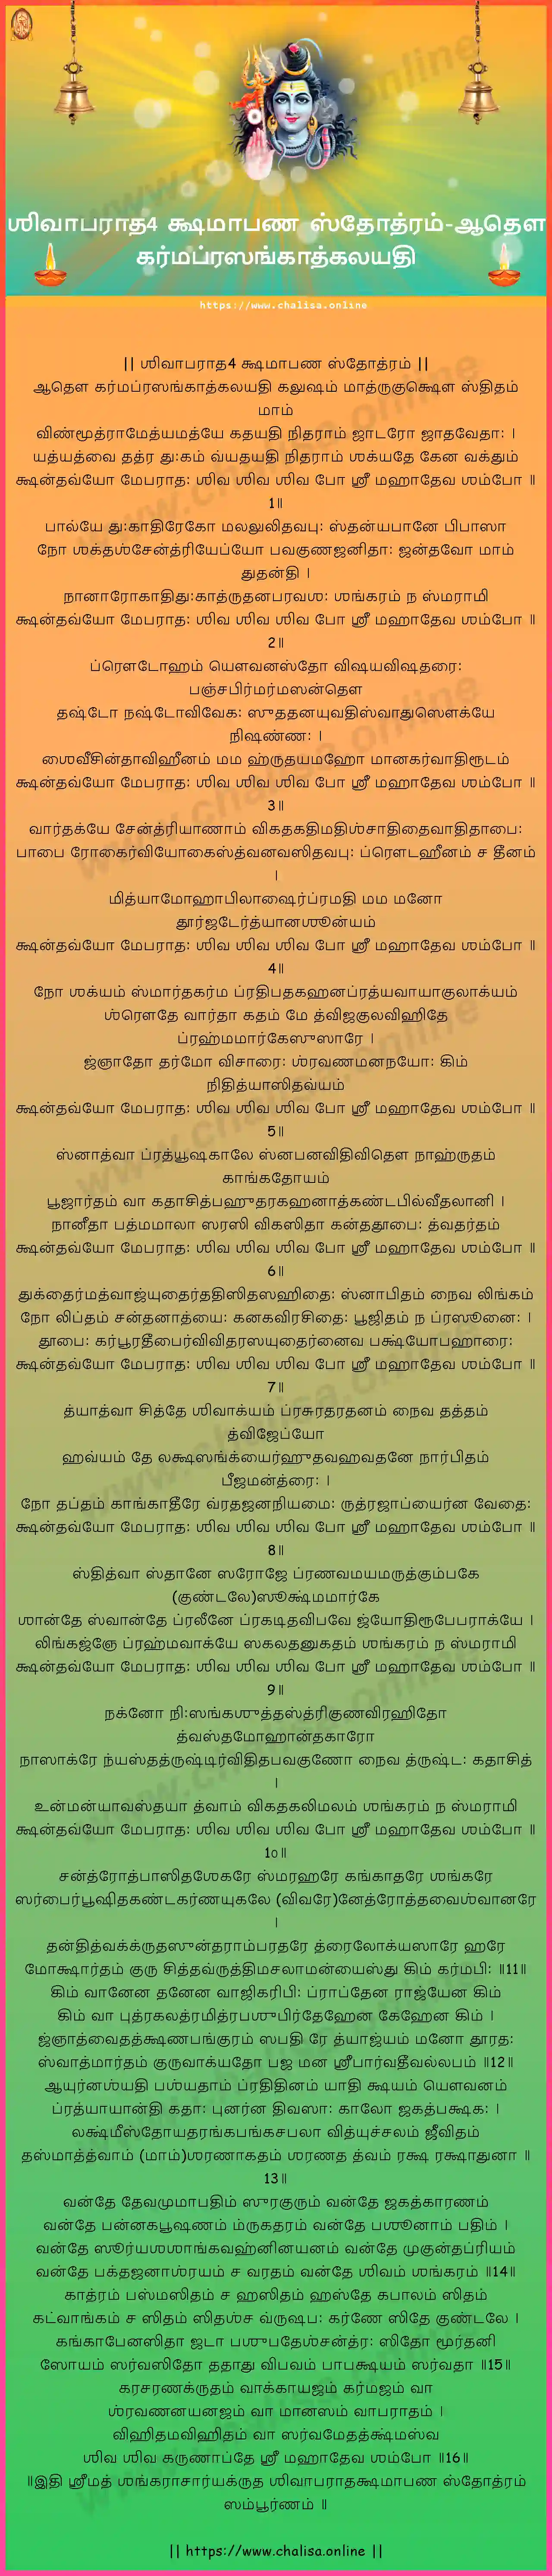 adau-karmaprasangatkalayati-shiva-aparadha-kshamapana-stotram-tamil-tamil-lyrics-download